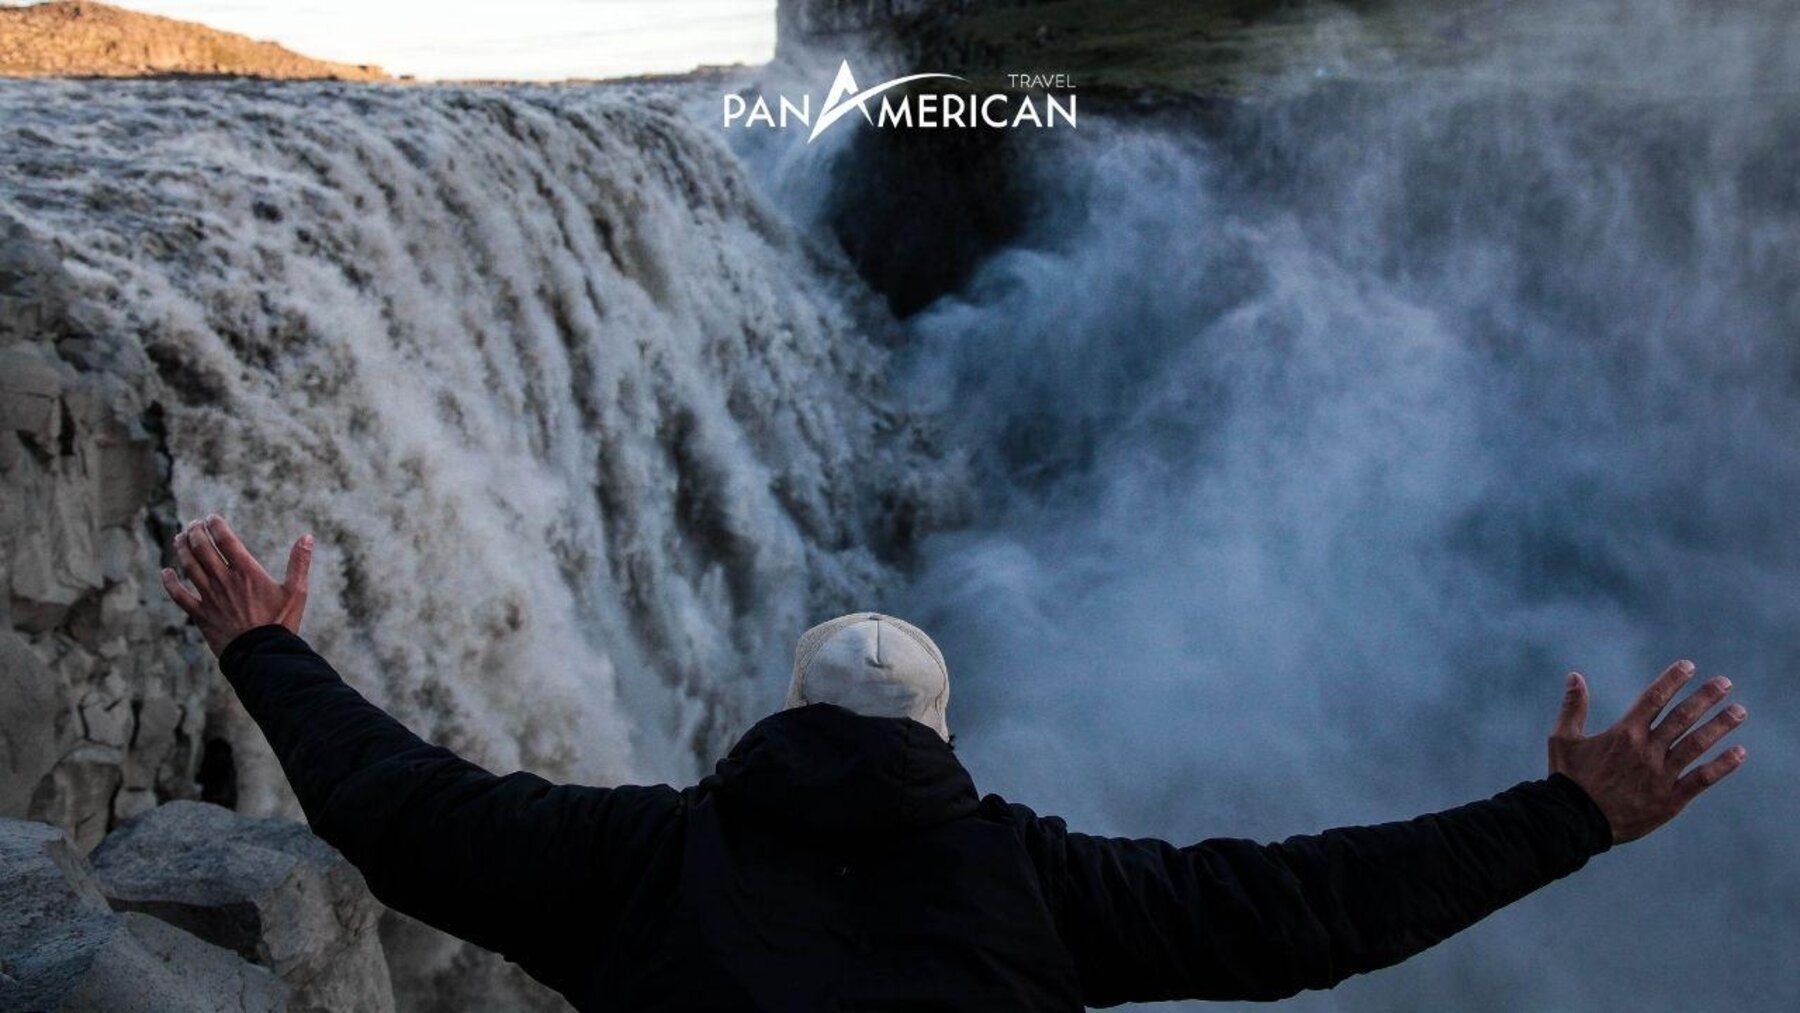 Chiêm ngưỡng sự kỳ vĩ của 10 thác nước đẹp nhất thế giới - Gallery Image